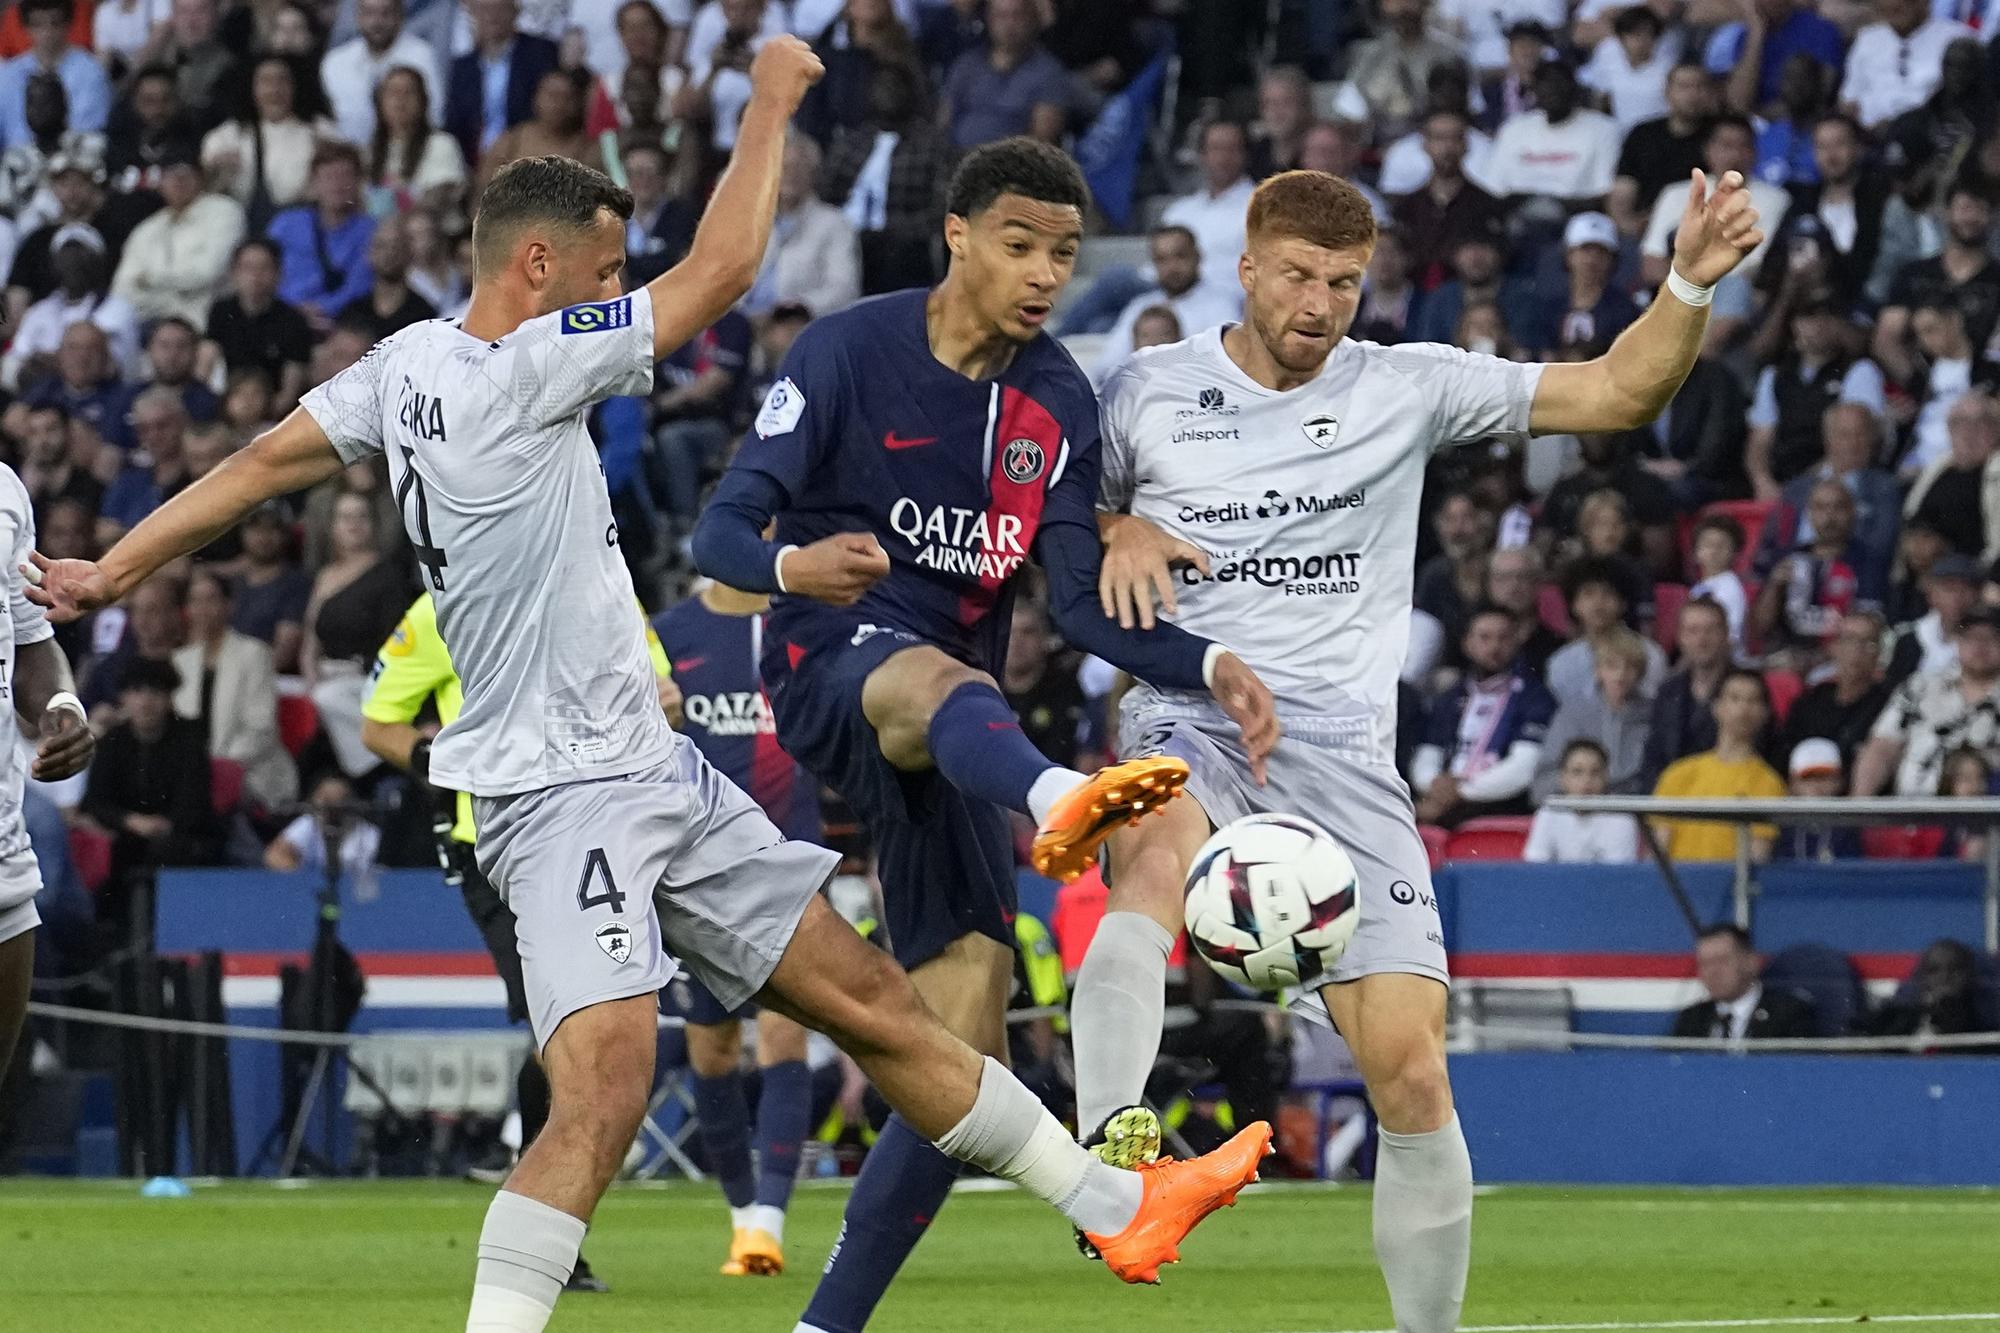 Futbalisti Paríža St. Germain v zápase s Clermontom.